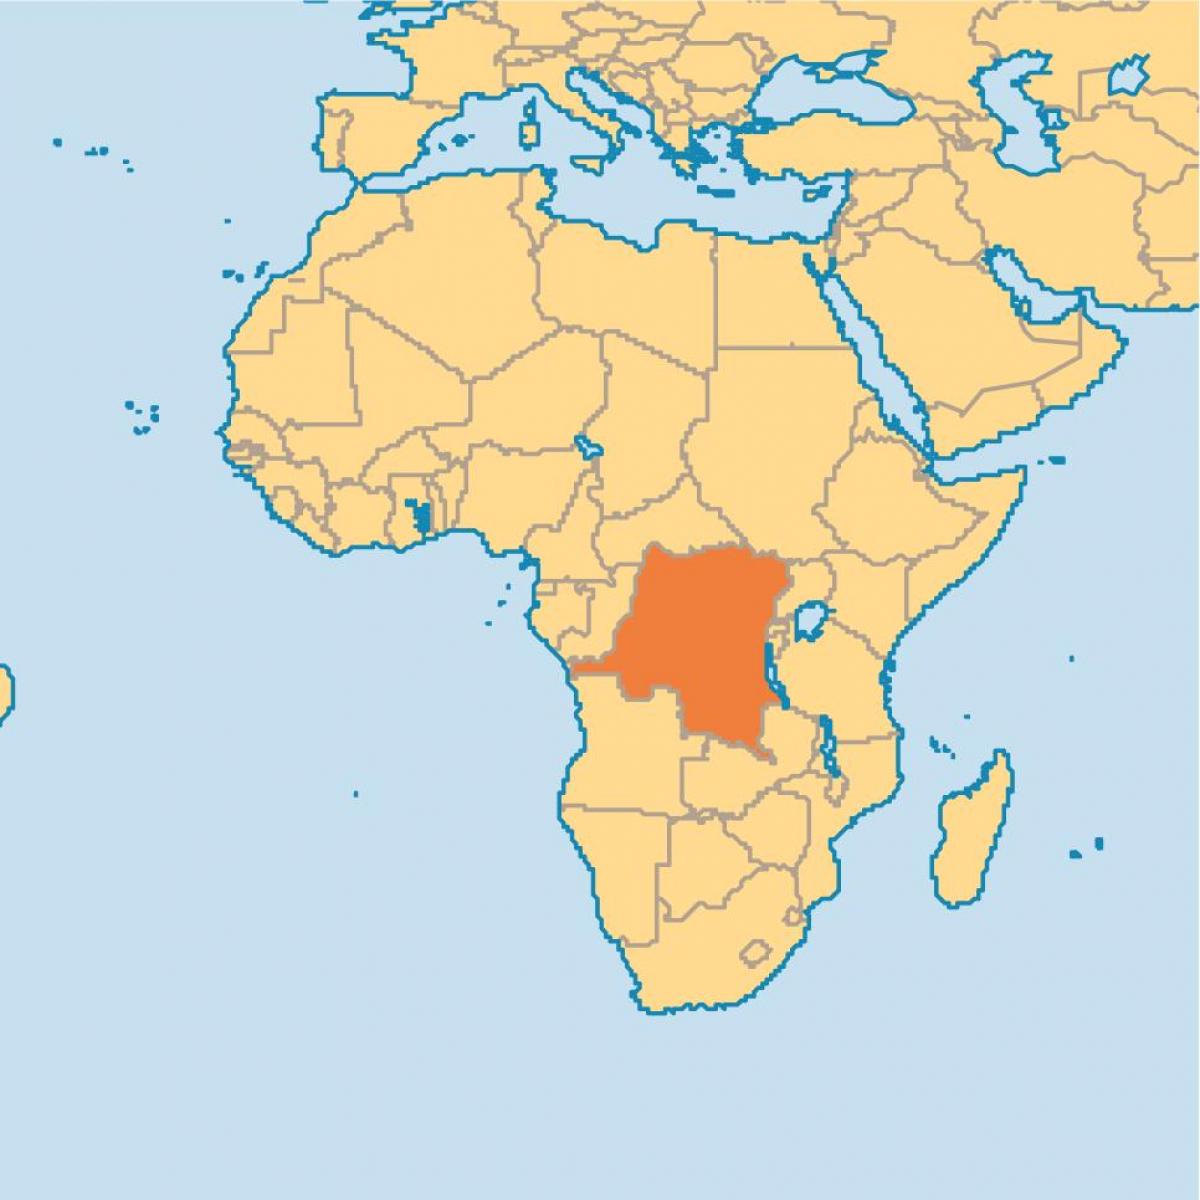 Mapa de zaire en el mundo